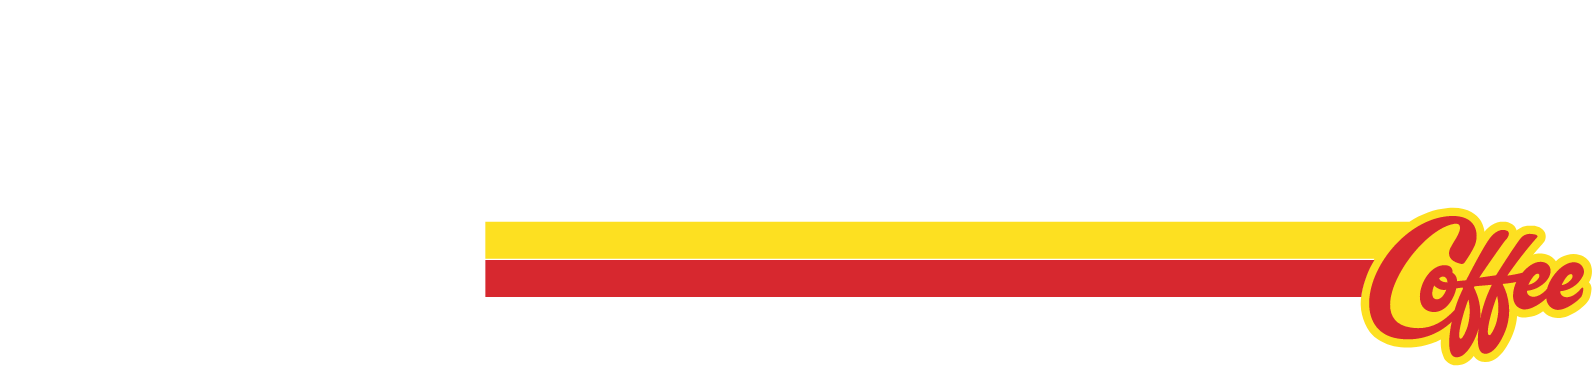 Dutch Bros Logo groß für dunkle Hintergründe (transparentes PNG)